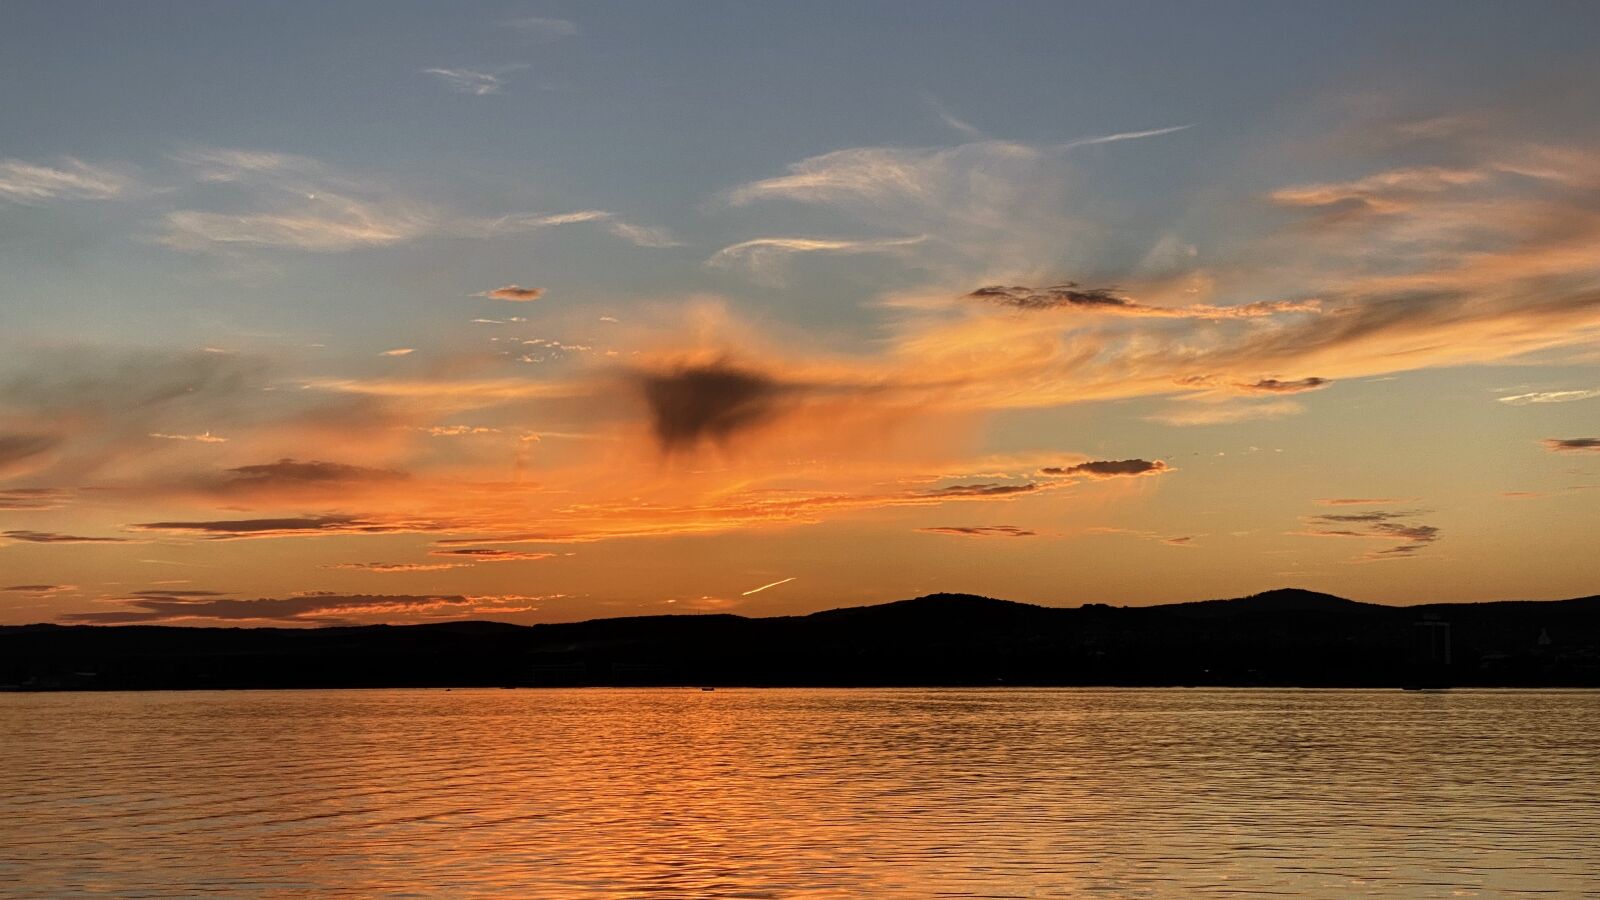 Apple iPhone 11 Pro sample photo. Sunset, lake, landscape photography